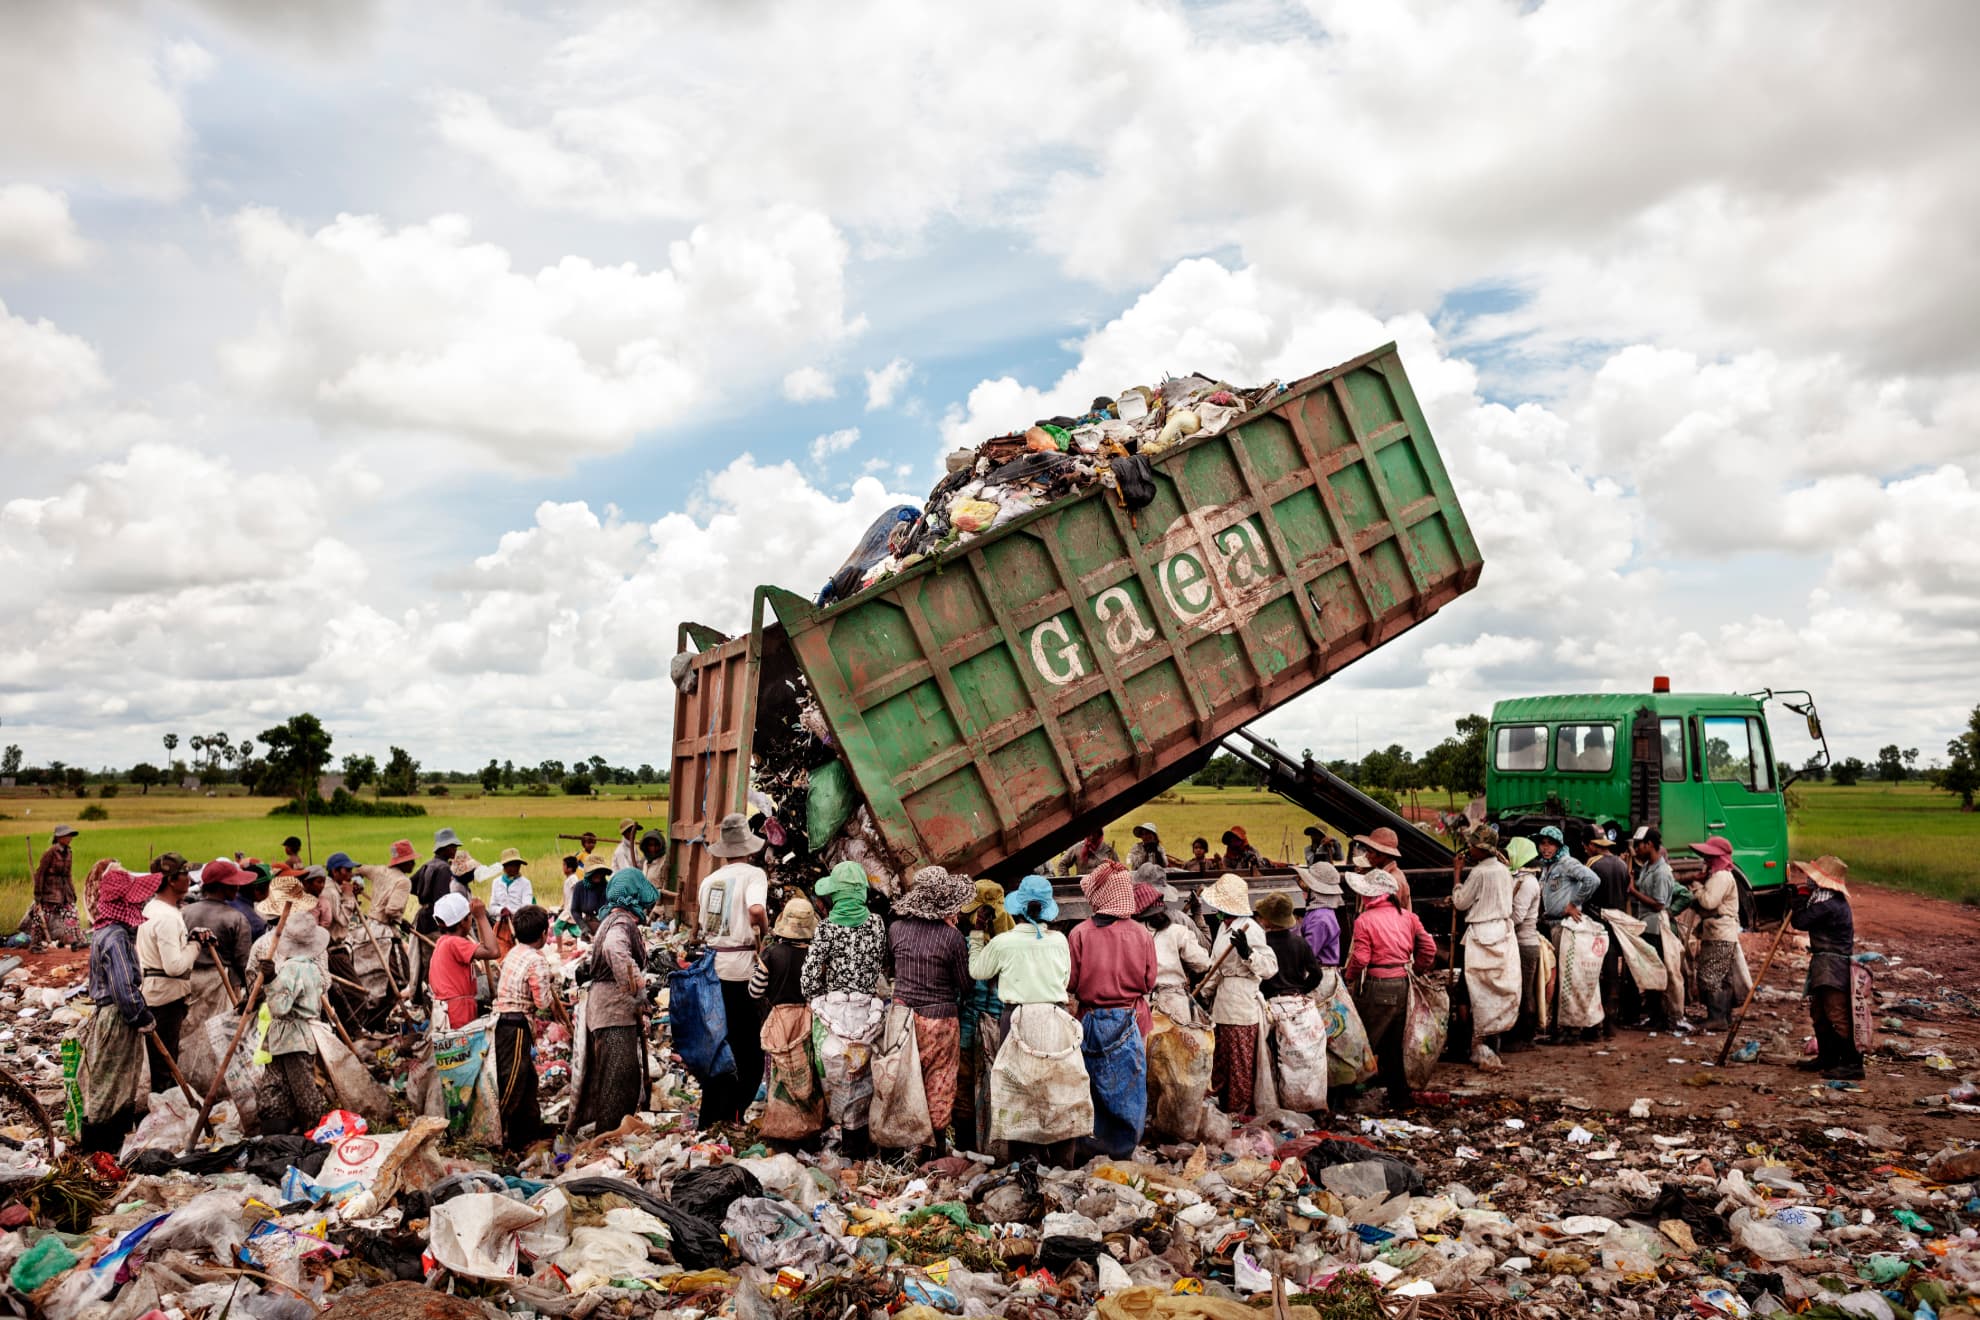 Un camión cargado de residuos llega hasta el basurero de Siem Reap (Camboya). En este lugar se estima que trabajan unos 20 menores de edad con sus familias.